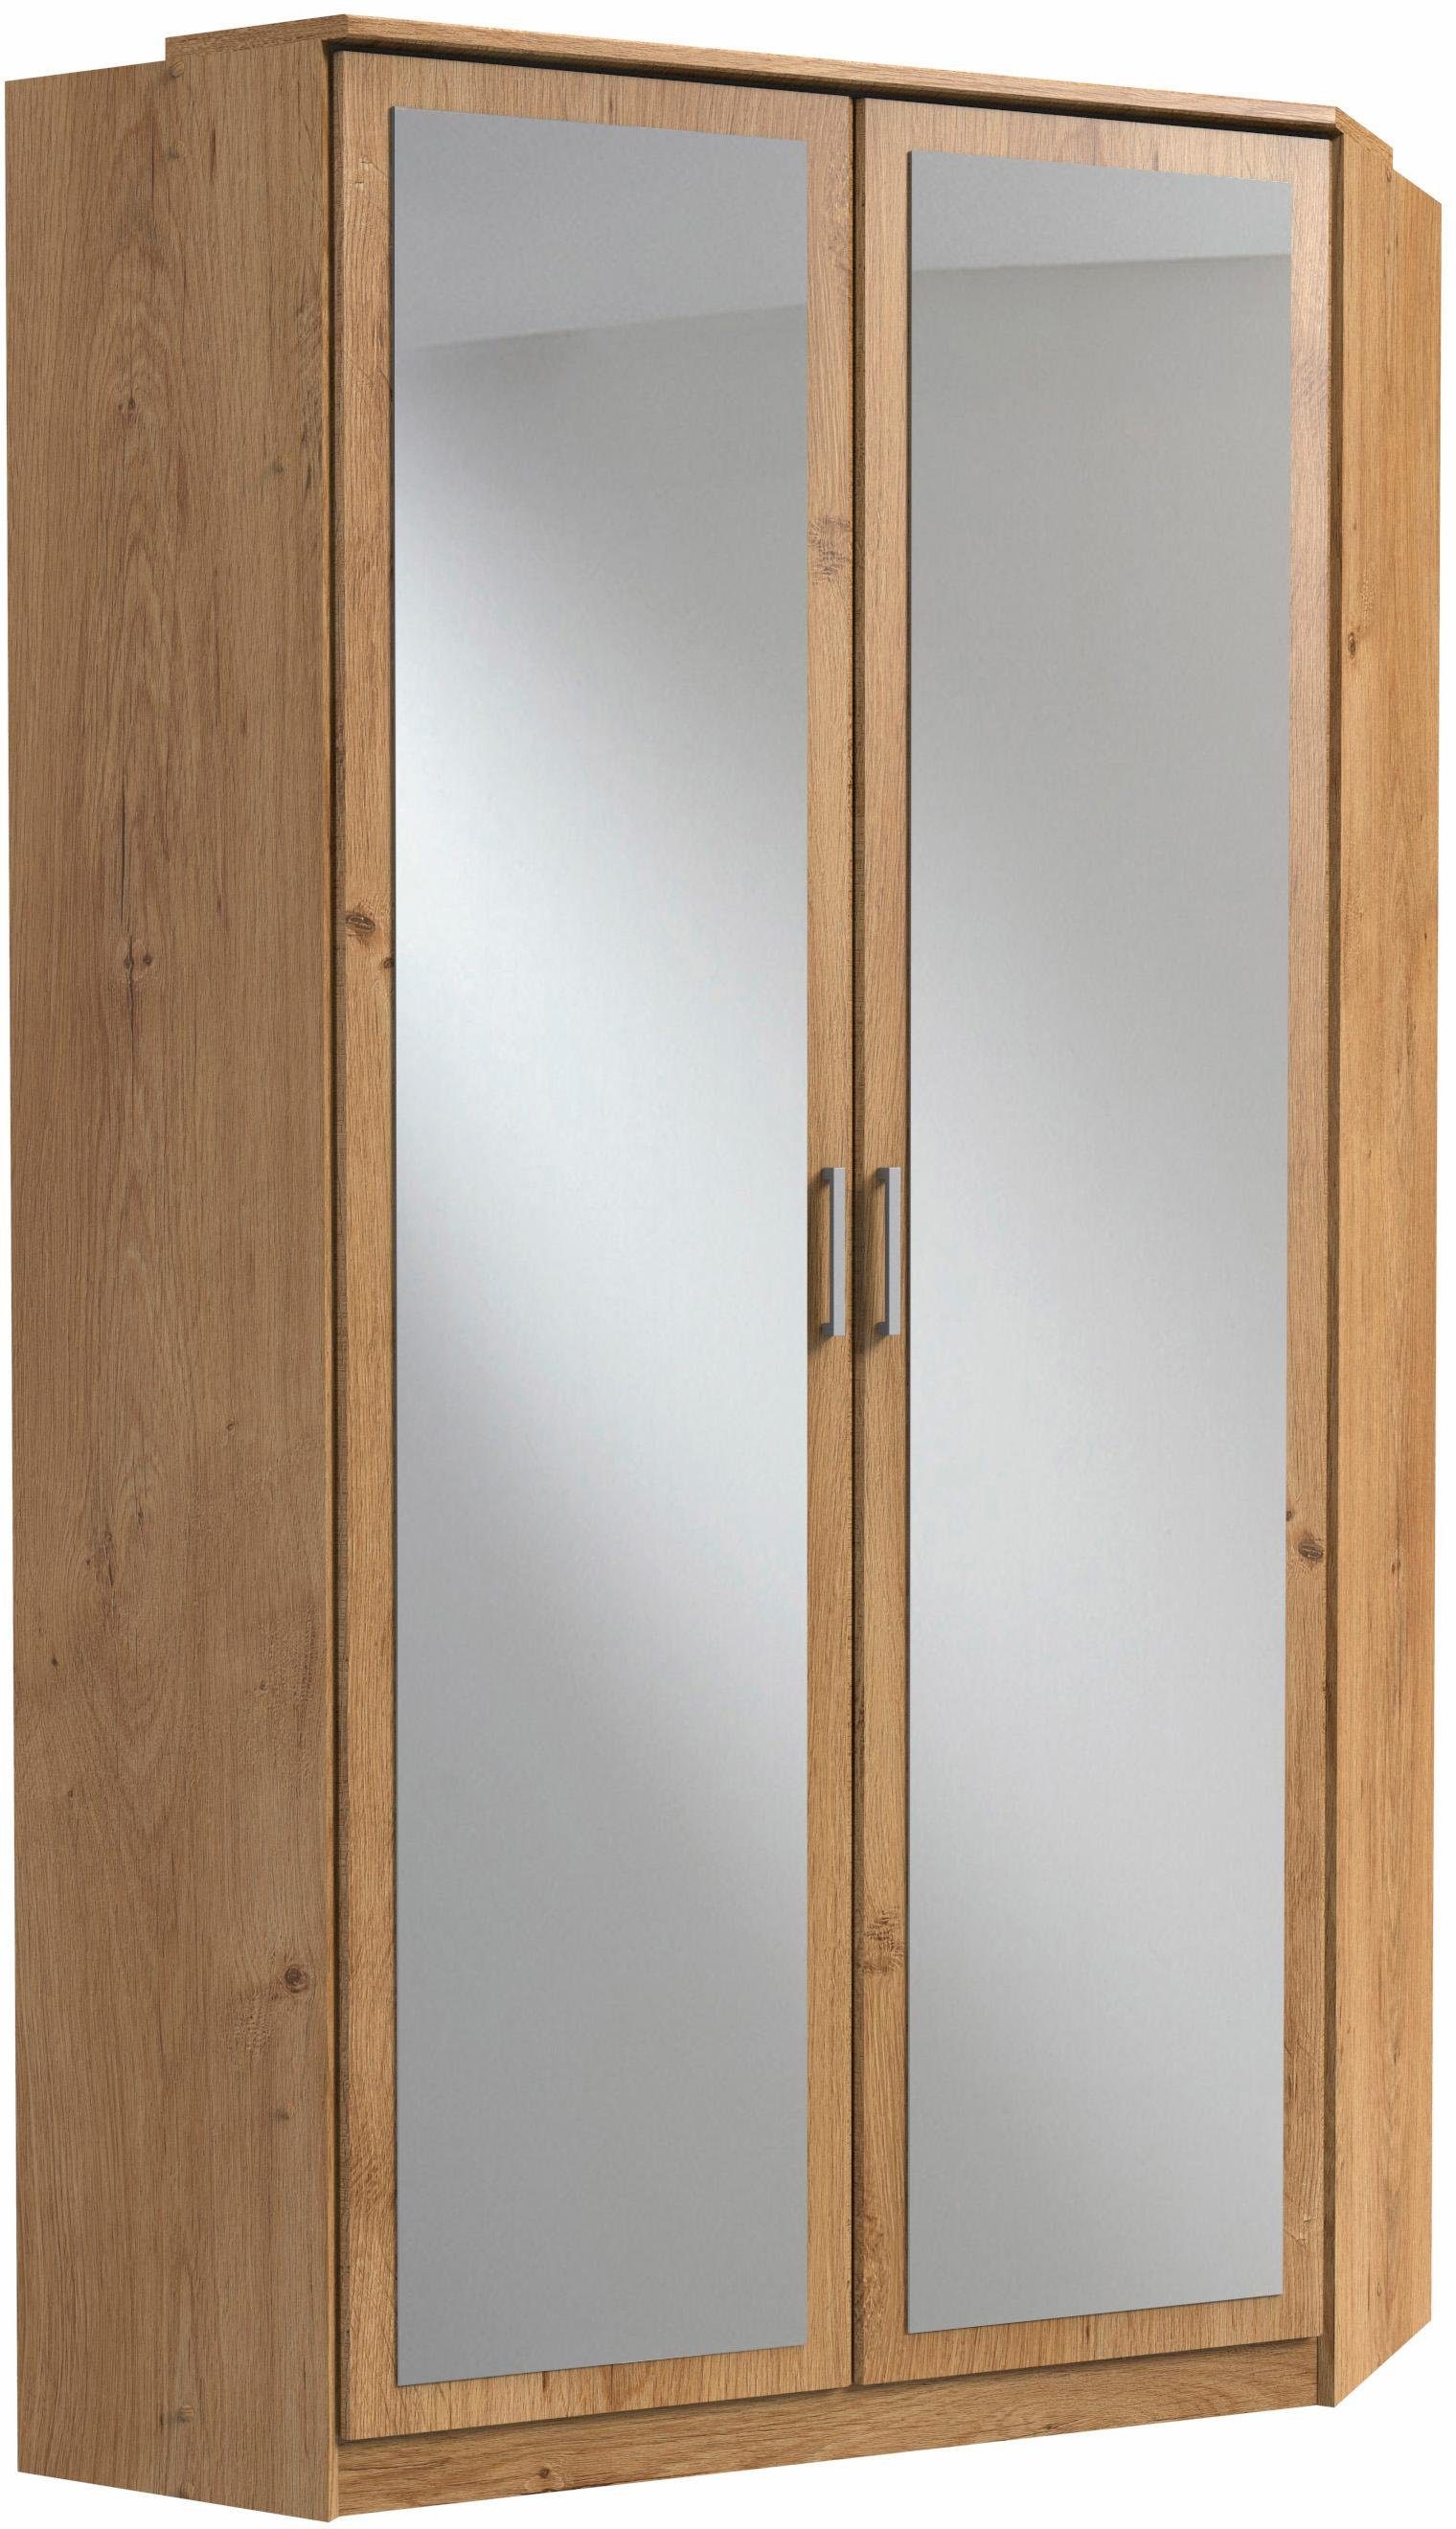 2 Wimex plankeneichefarben Click Spiegeltüren mit Eckkleiderschrank